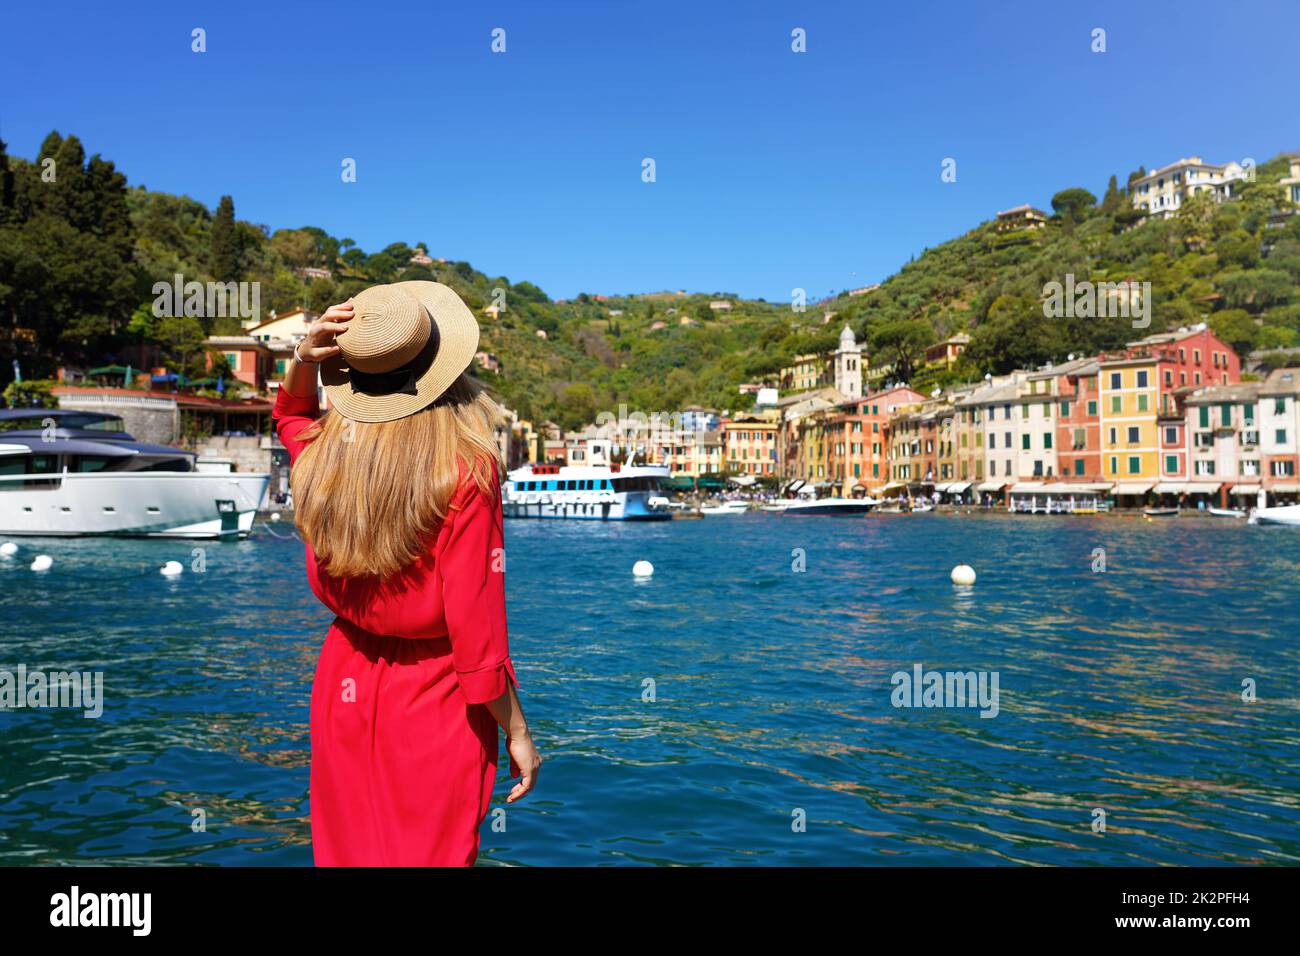 Tourismus in Italien. Rückansicht der wunderschönen jungen Frau in rotem Kleid bietet Blick auf das farbenfrohe Dorf Portofino mit Yachten im Hafen, Portofino, Ligurien, Italien. Stockfoto